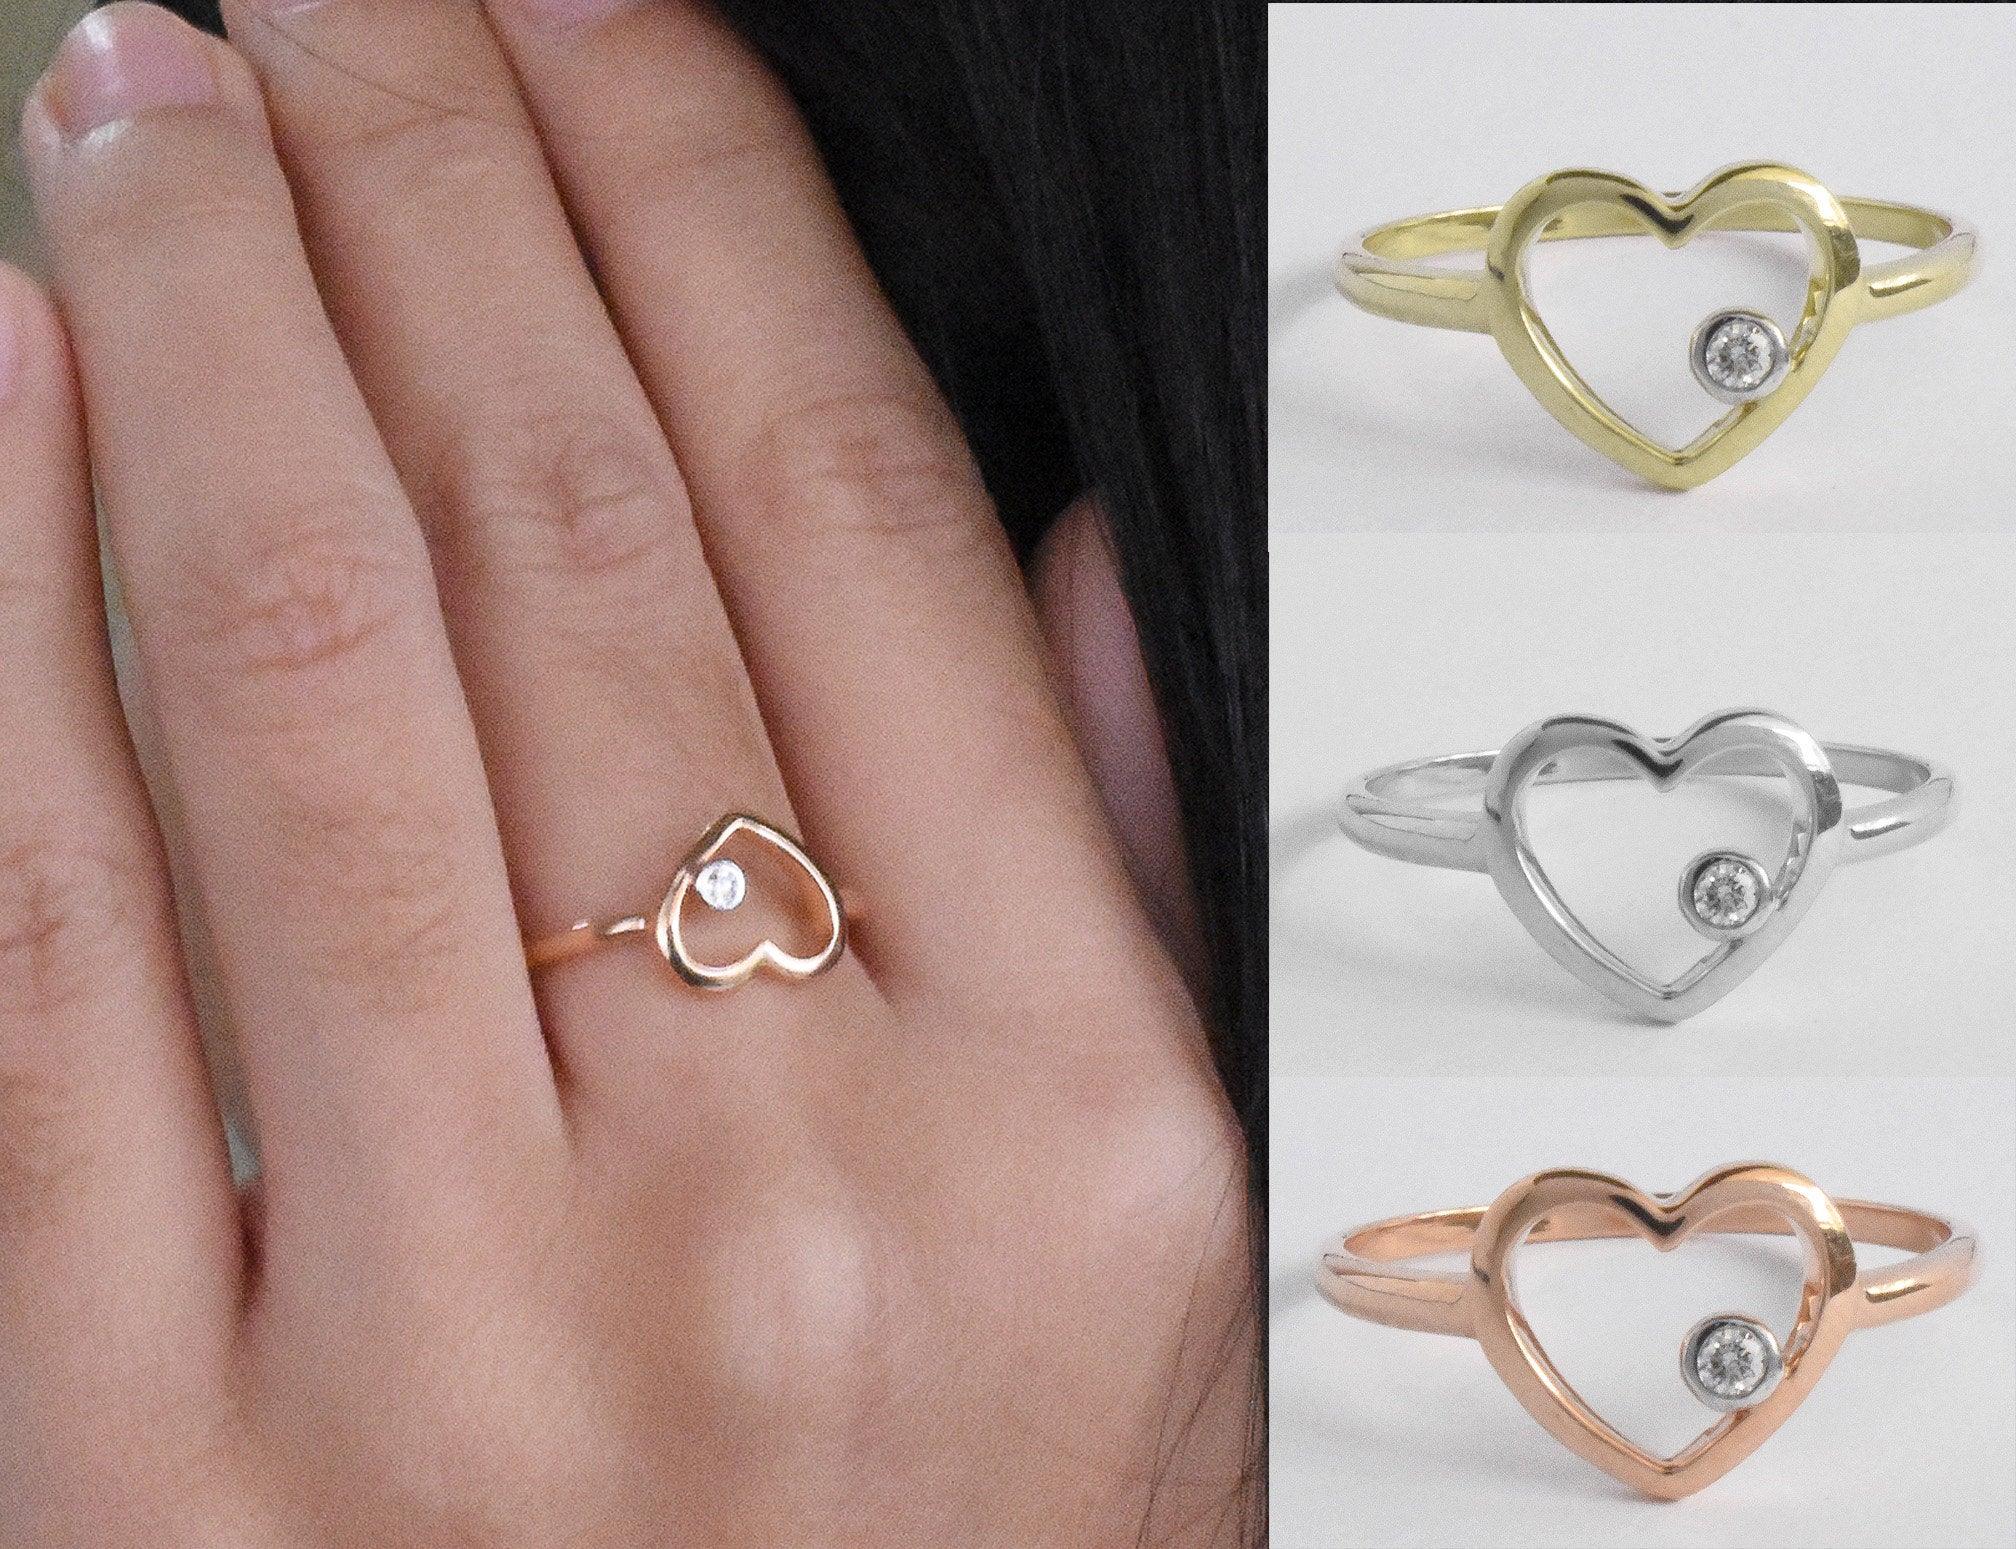 For Sale:  18k Rose Gold Diamond Heart Ring Minimal Heart Ring with Bezel Set Diamond 11